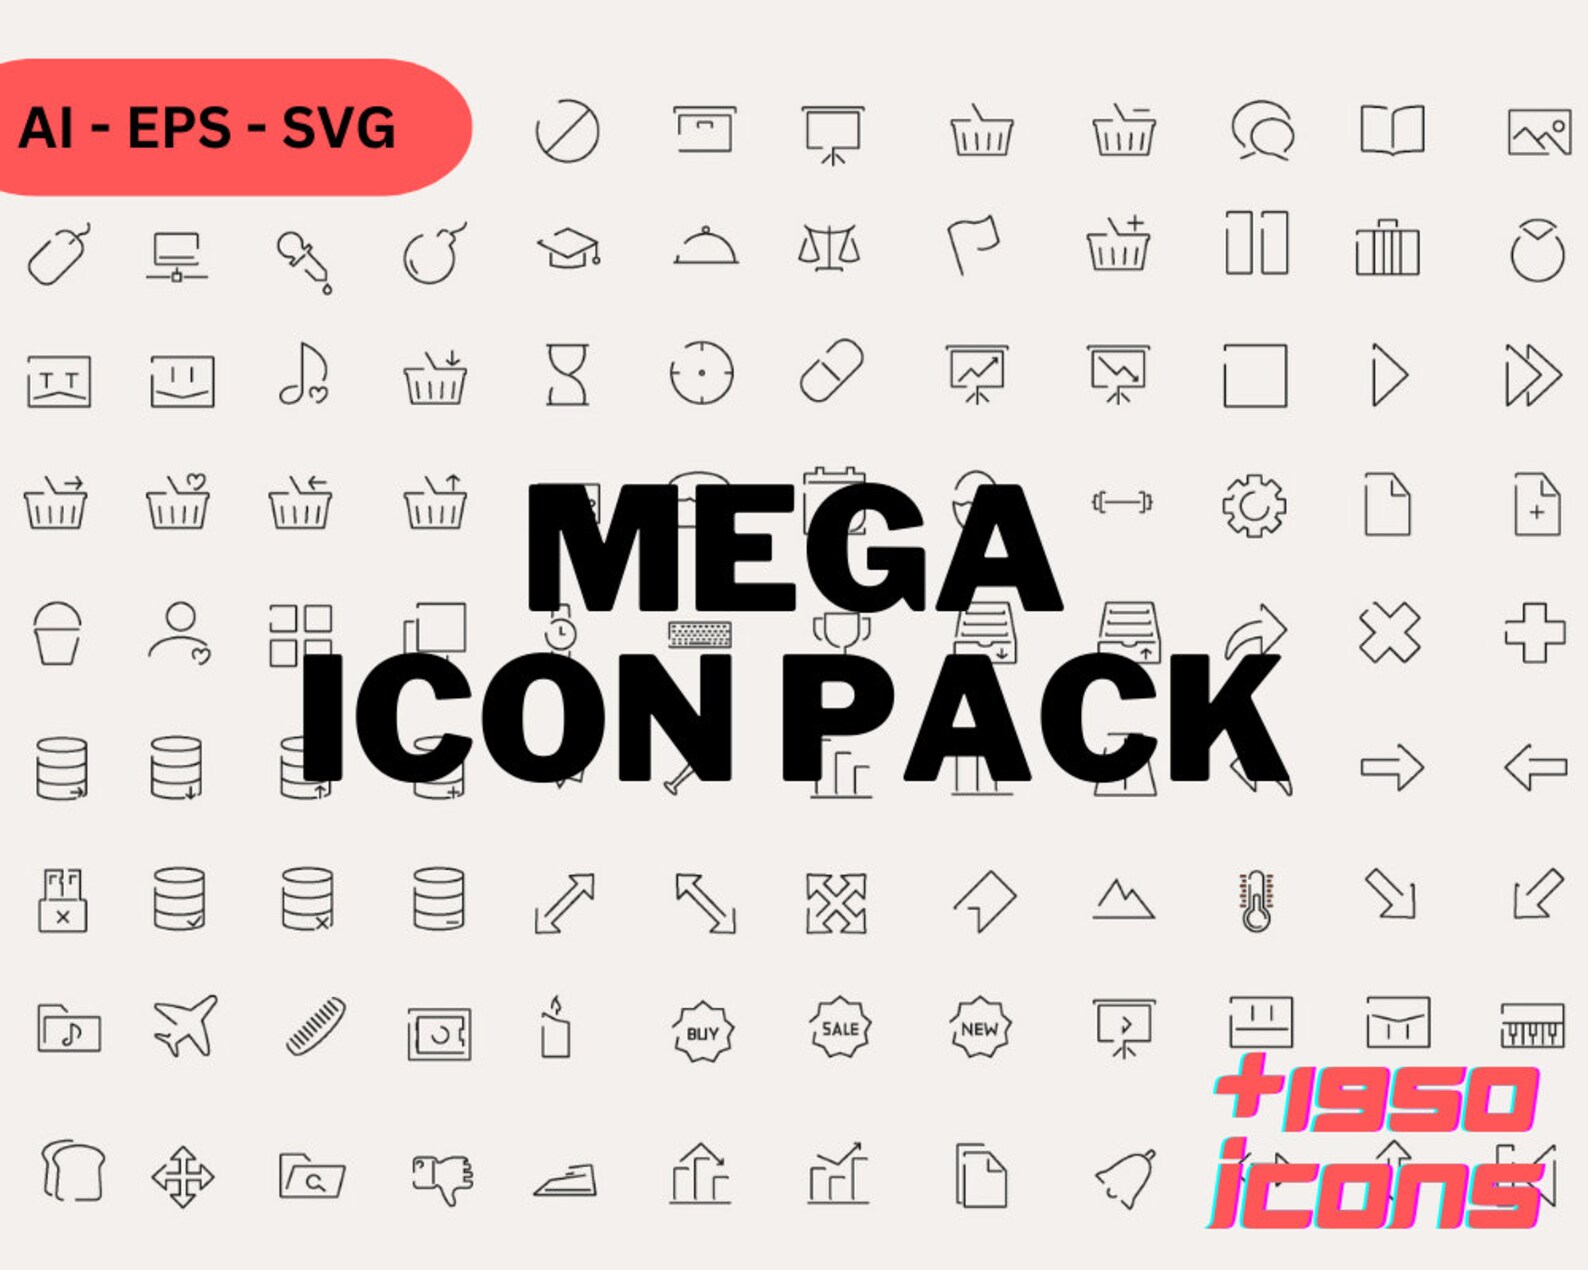 Mega Icon Pack 1950 Icons Ai Eps Svg Icon Bundle Pack Etsy